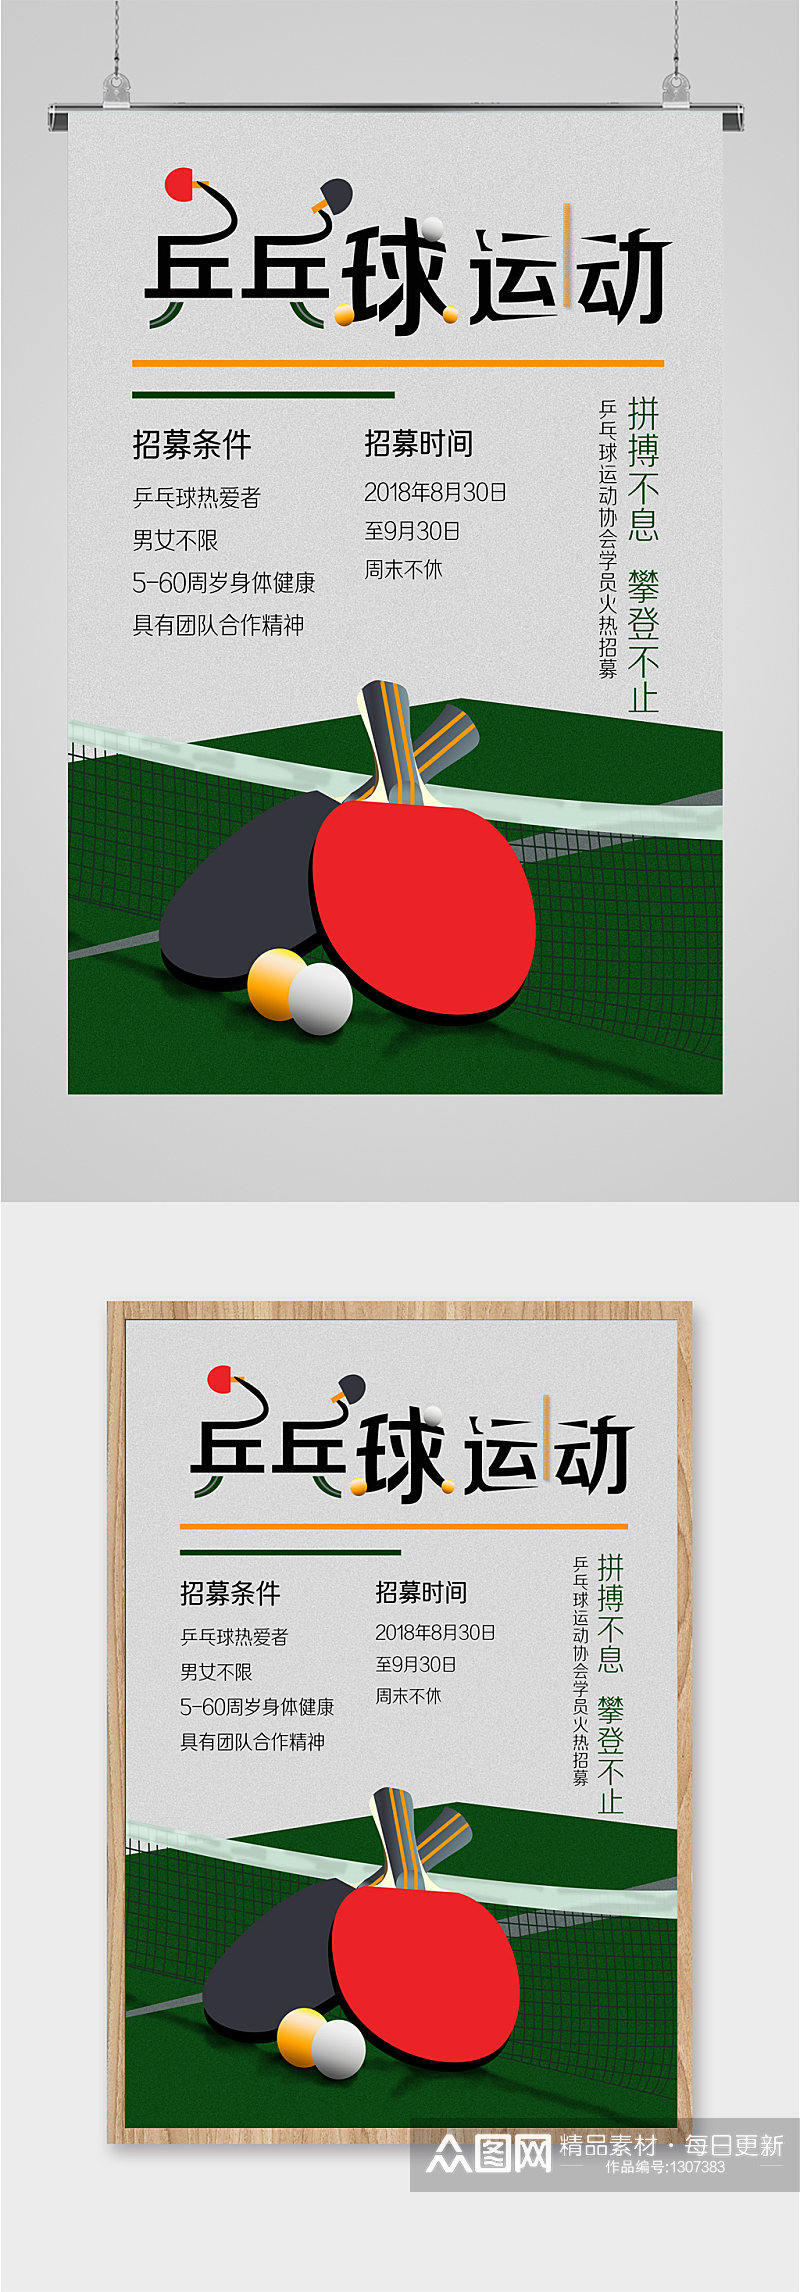 乒乓球运动宣传海报素材